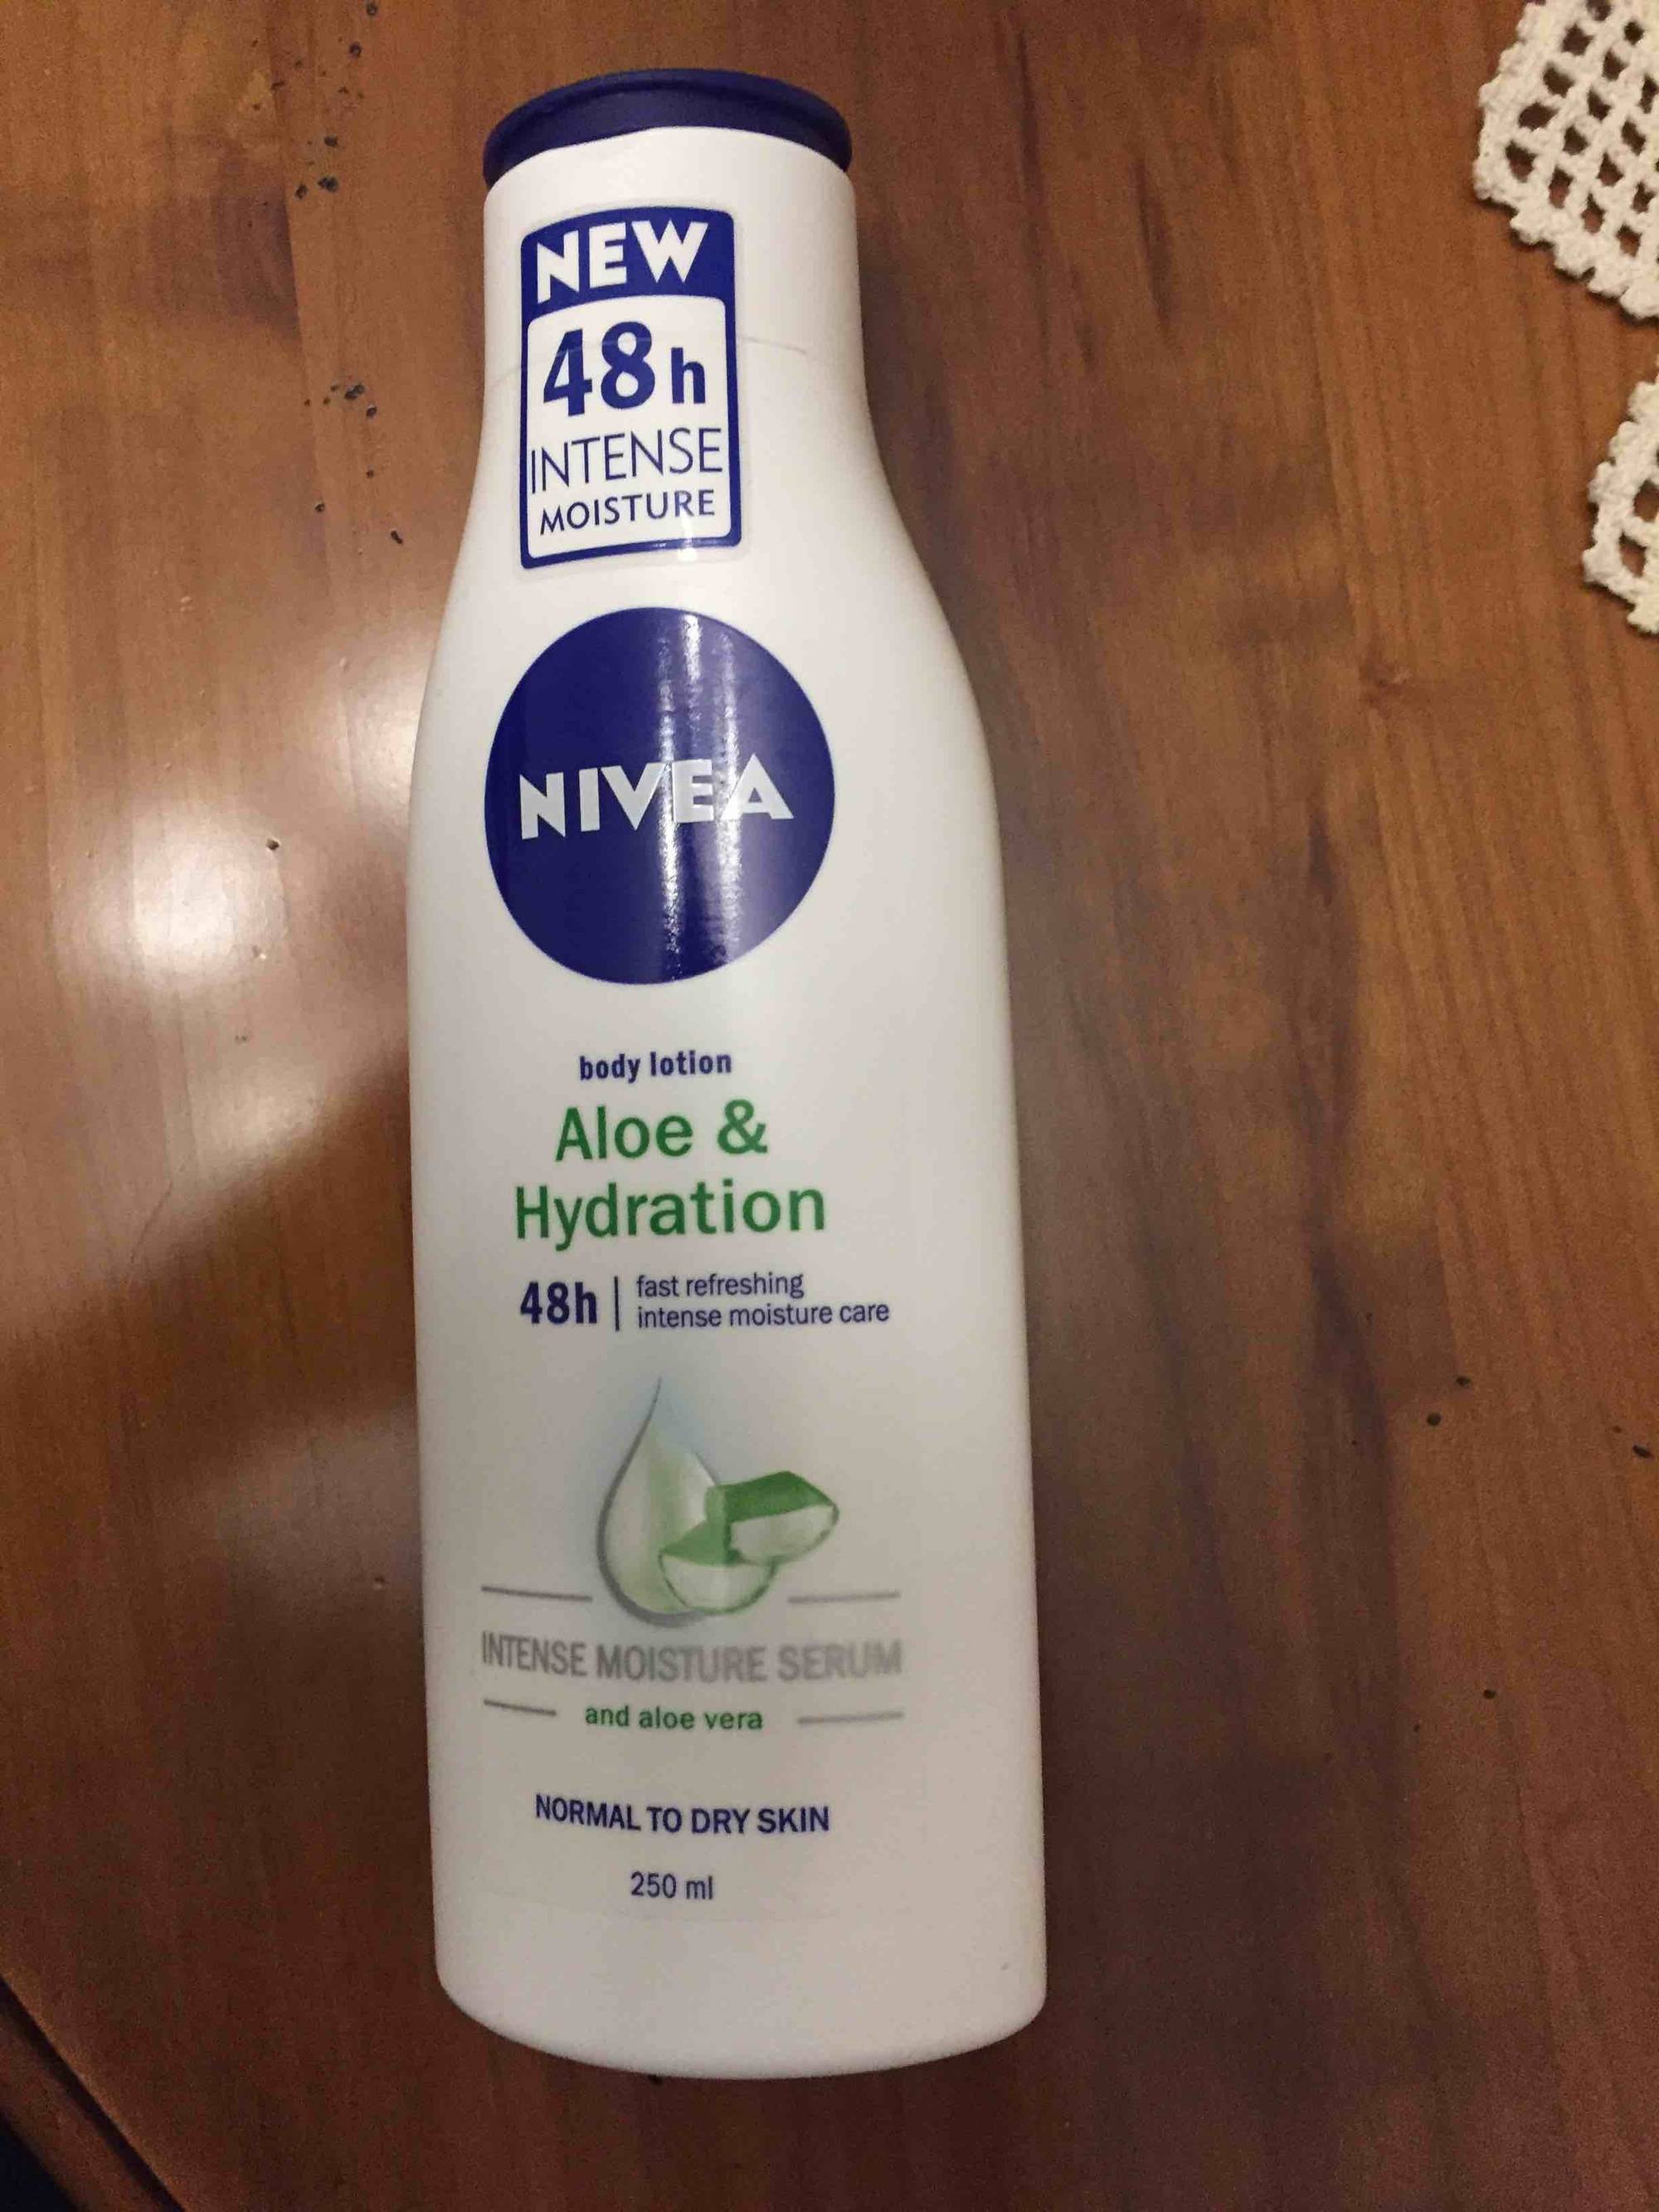 NIVEA - Aloe & hydratation - Body lotion 48h